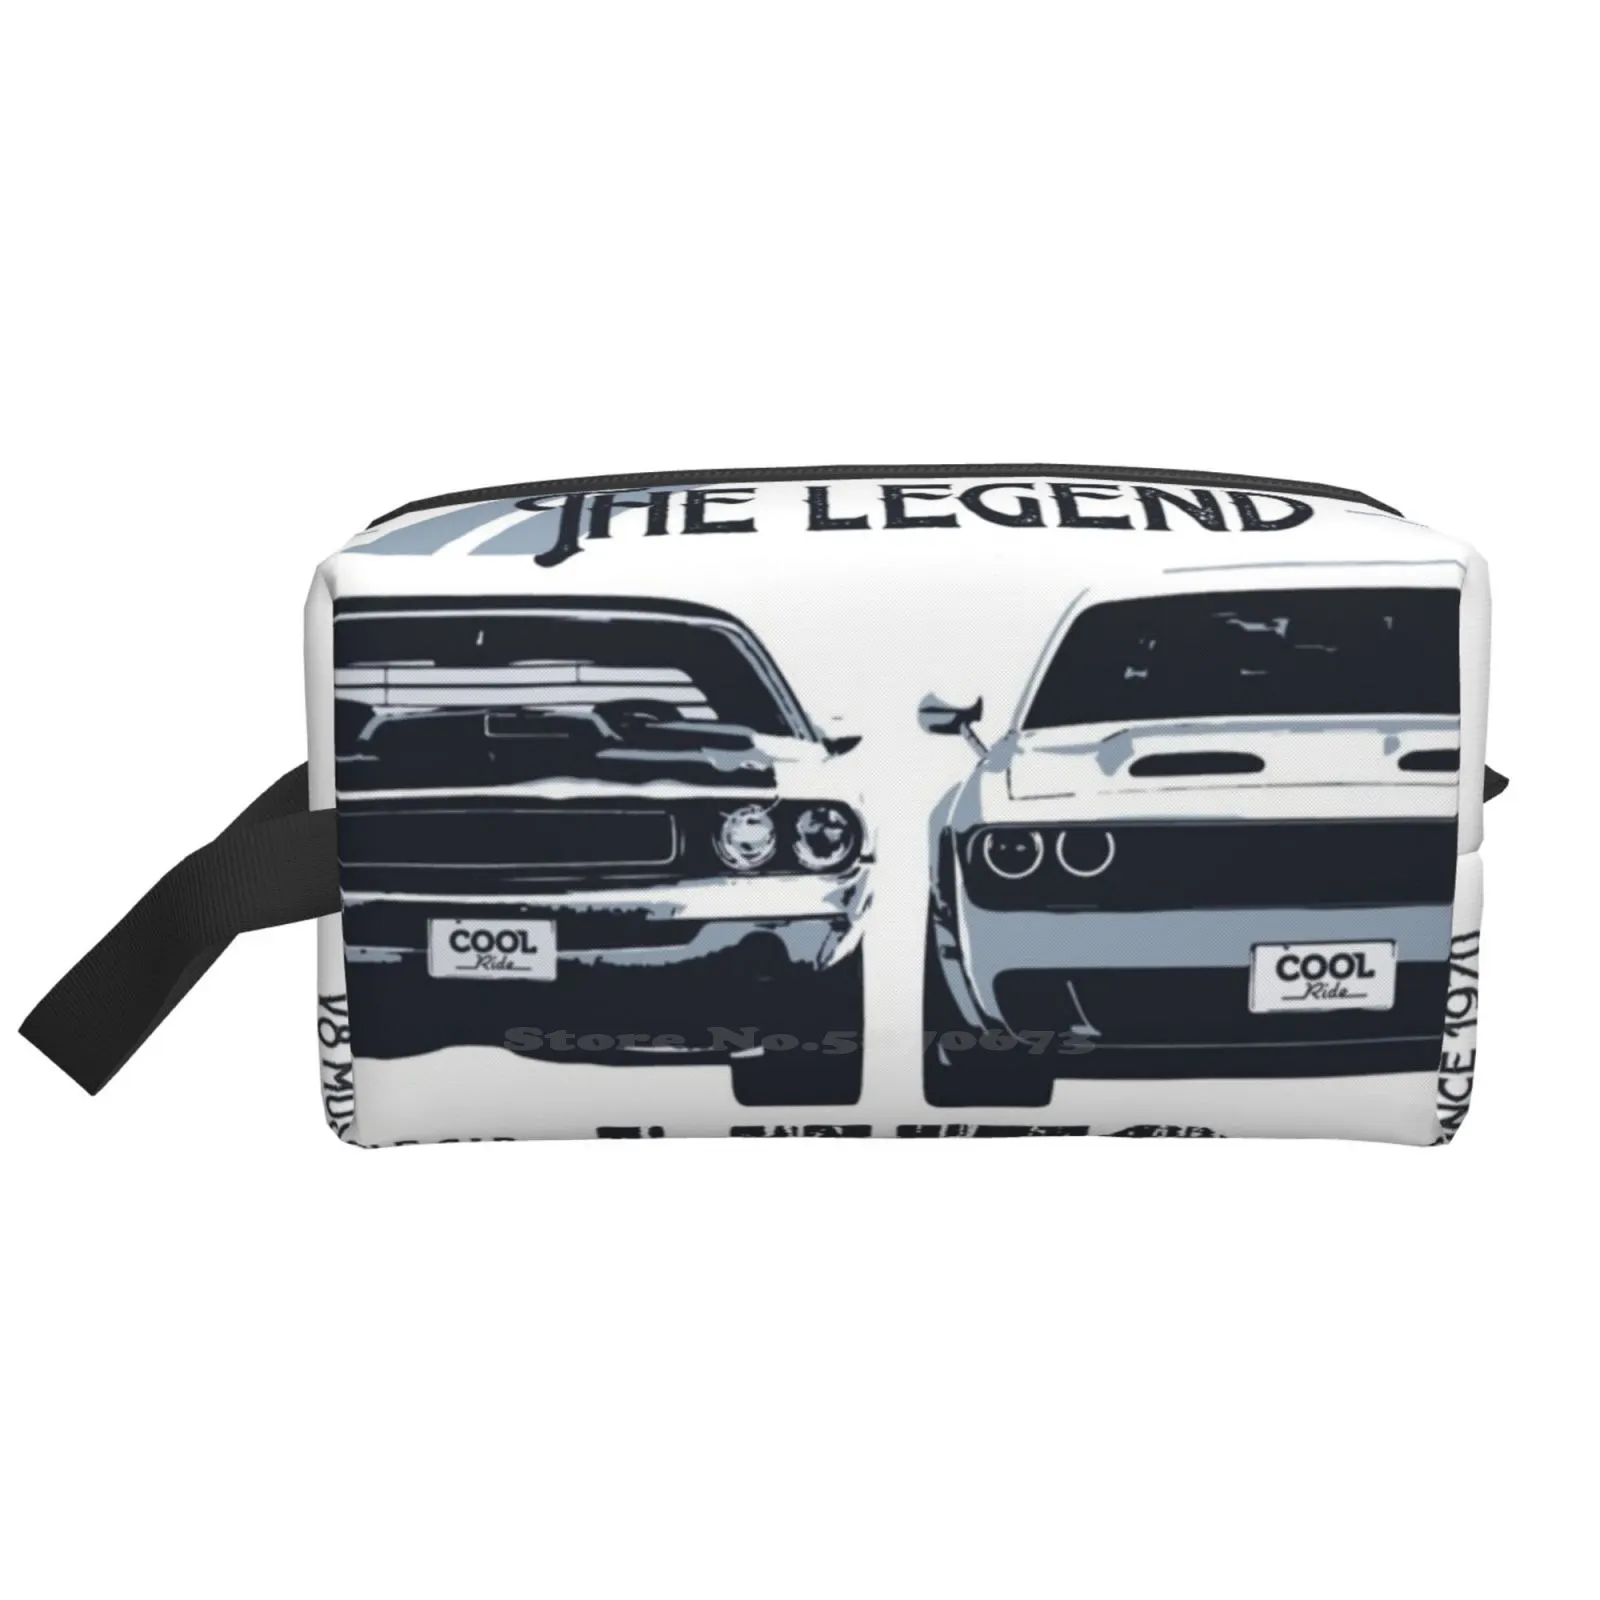 

Автомобильная сумка для хранения туалетных принадлежностей The Legend Lives, багажное полотенце для макияжа 70, зарядное устройство для мышечной машины, автомобиля Хардтоп V8, американский мышечный 70S